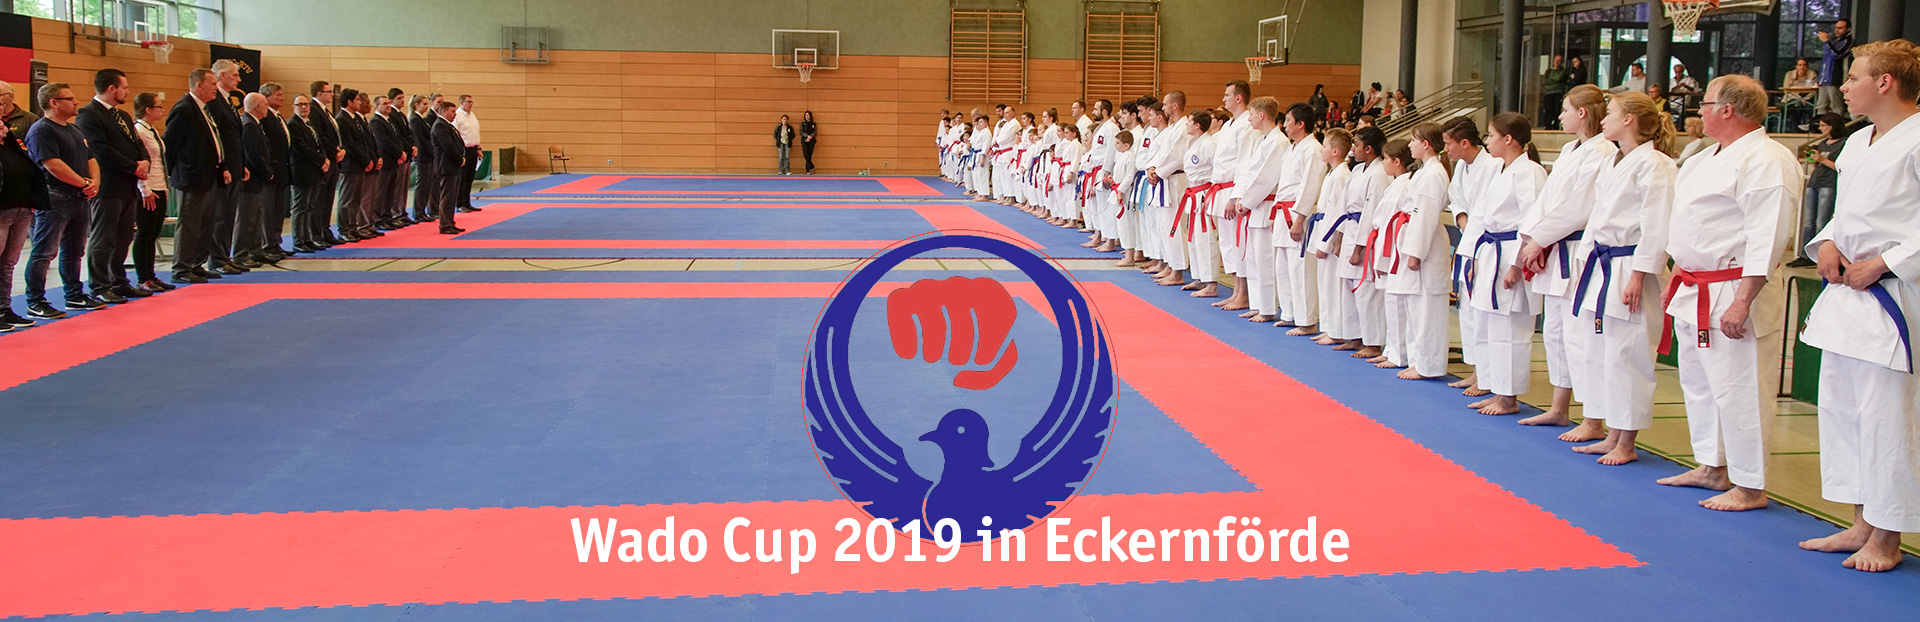 Wado Cup 2019 in Eckernförde